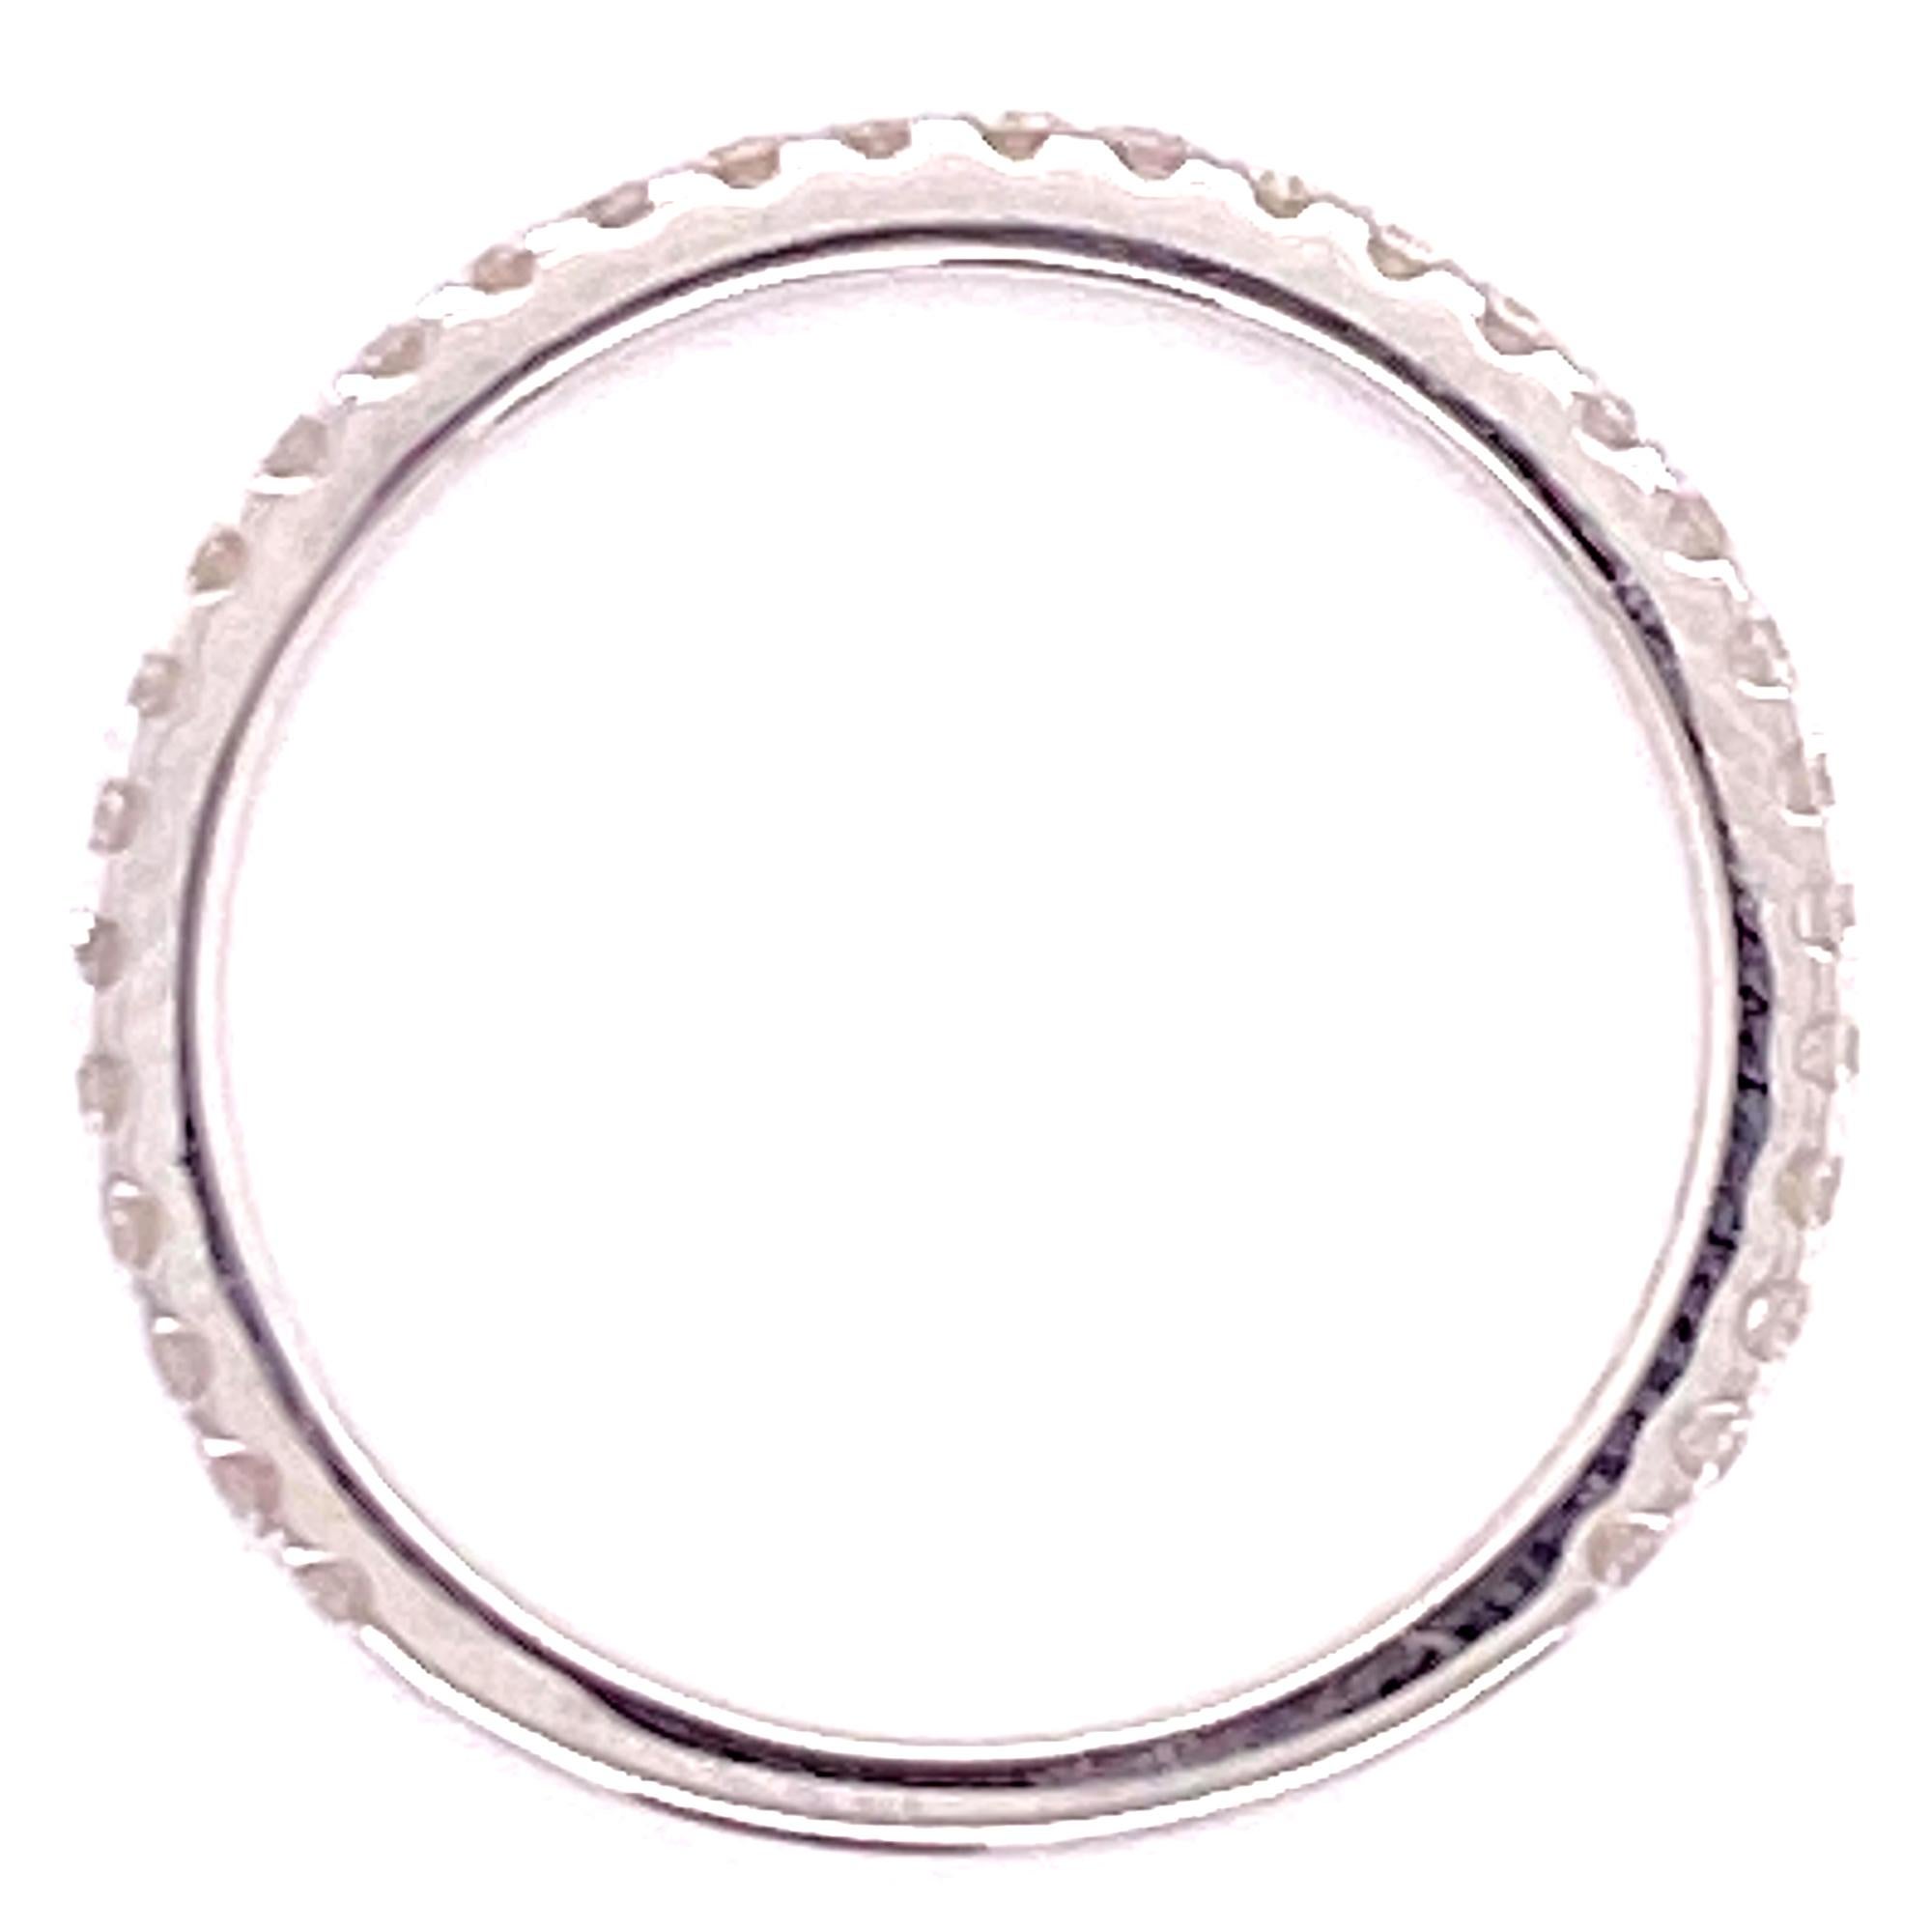 Round Cut Diamond 18 Karat White Gold Wedding Band Ring